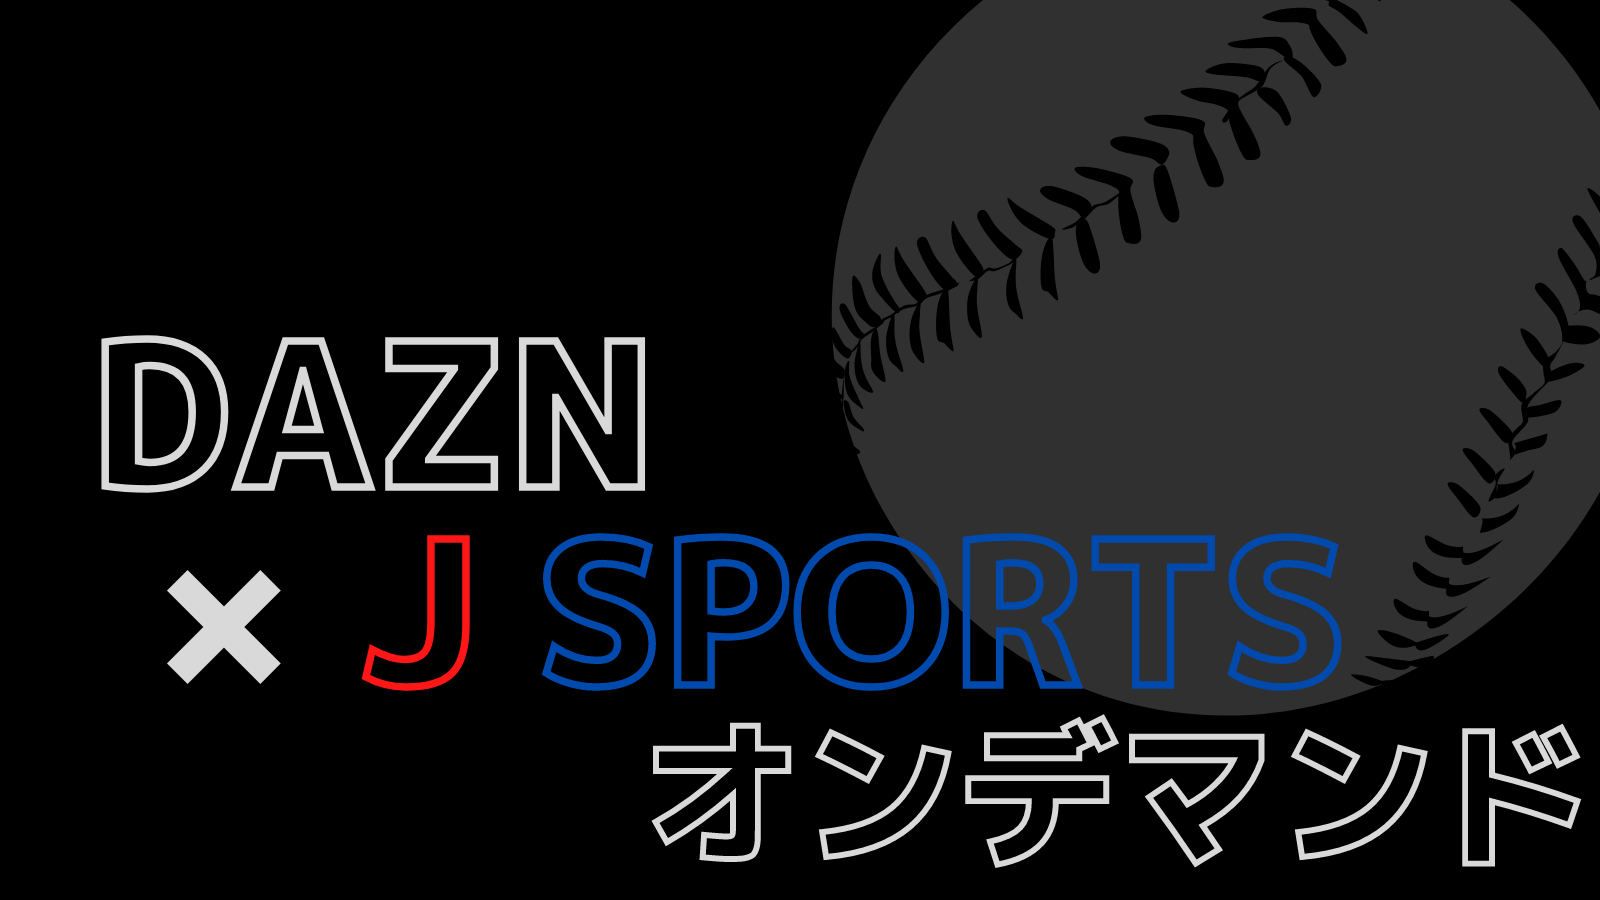 お得な裏ワザ Daznとj Sportsオンデマンドの併用でプロ野球12球団を視聴 野球観戦の教科書